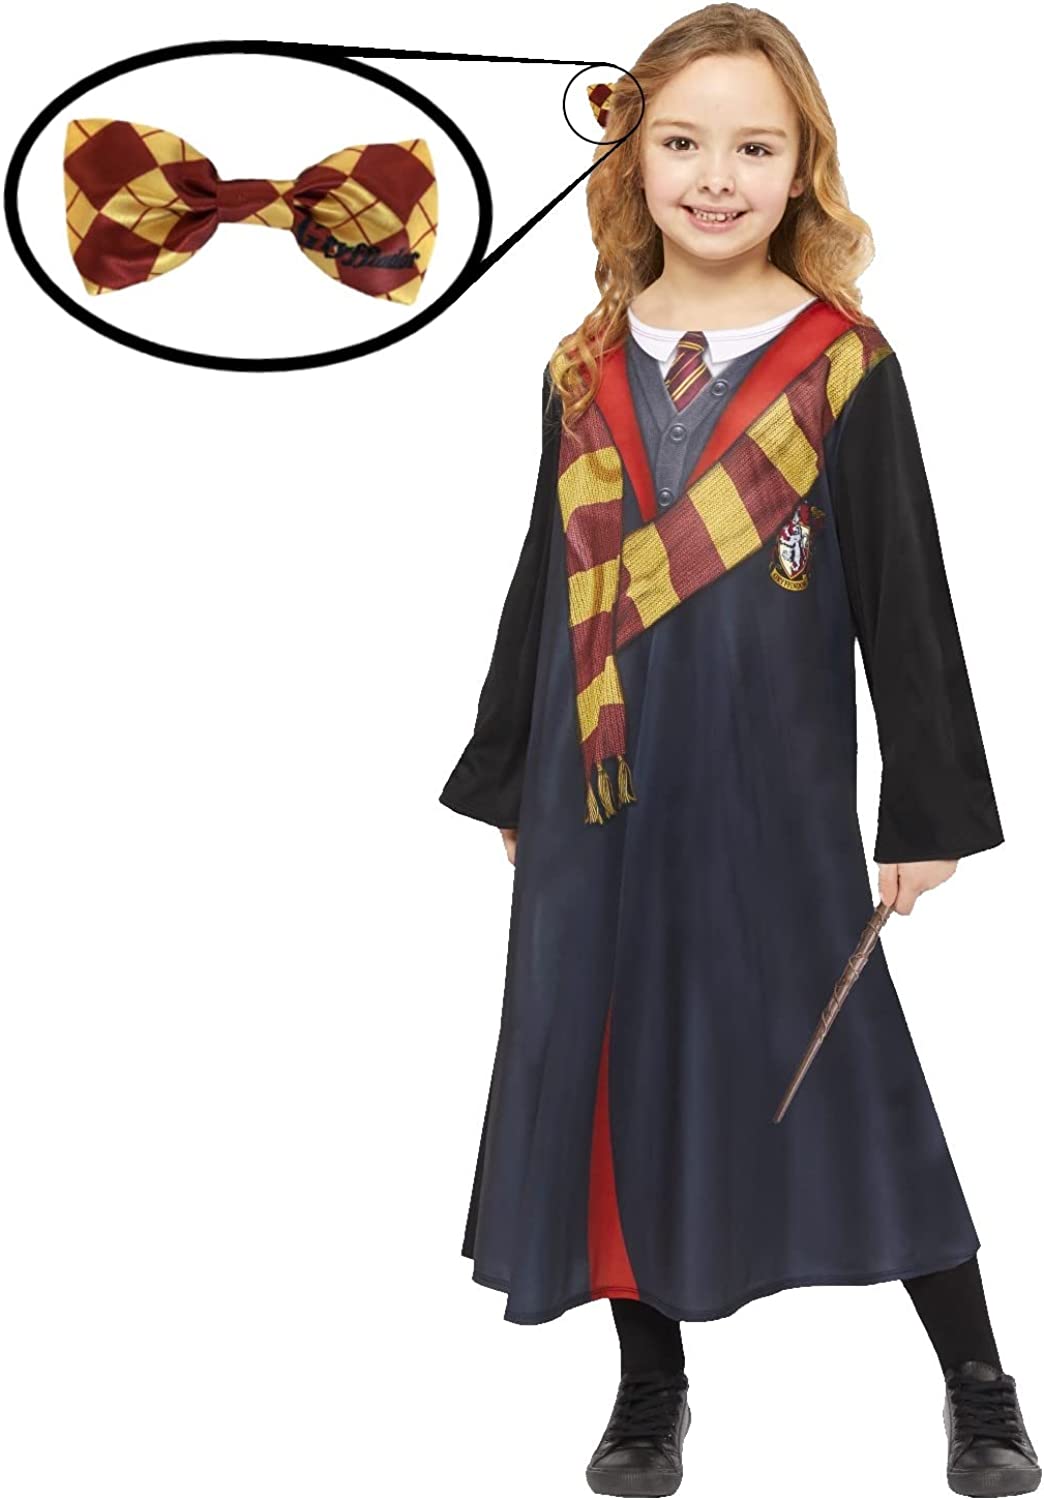 Kit costume da Hermione Granger, con licenza ufficiale, per